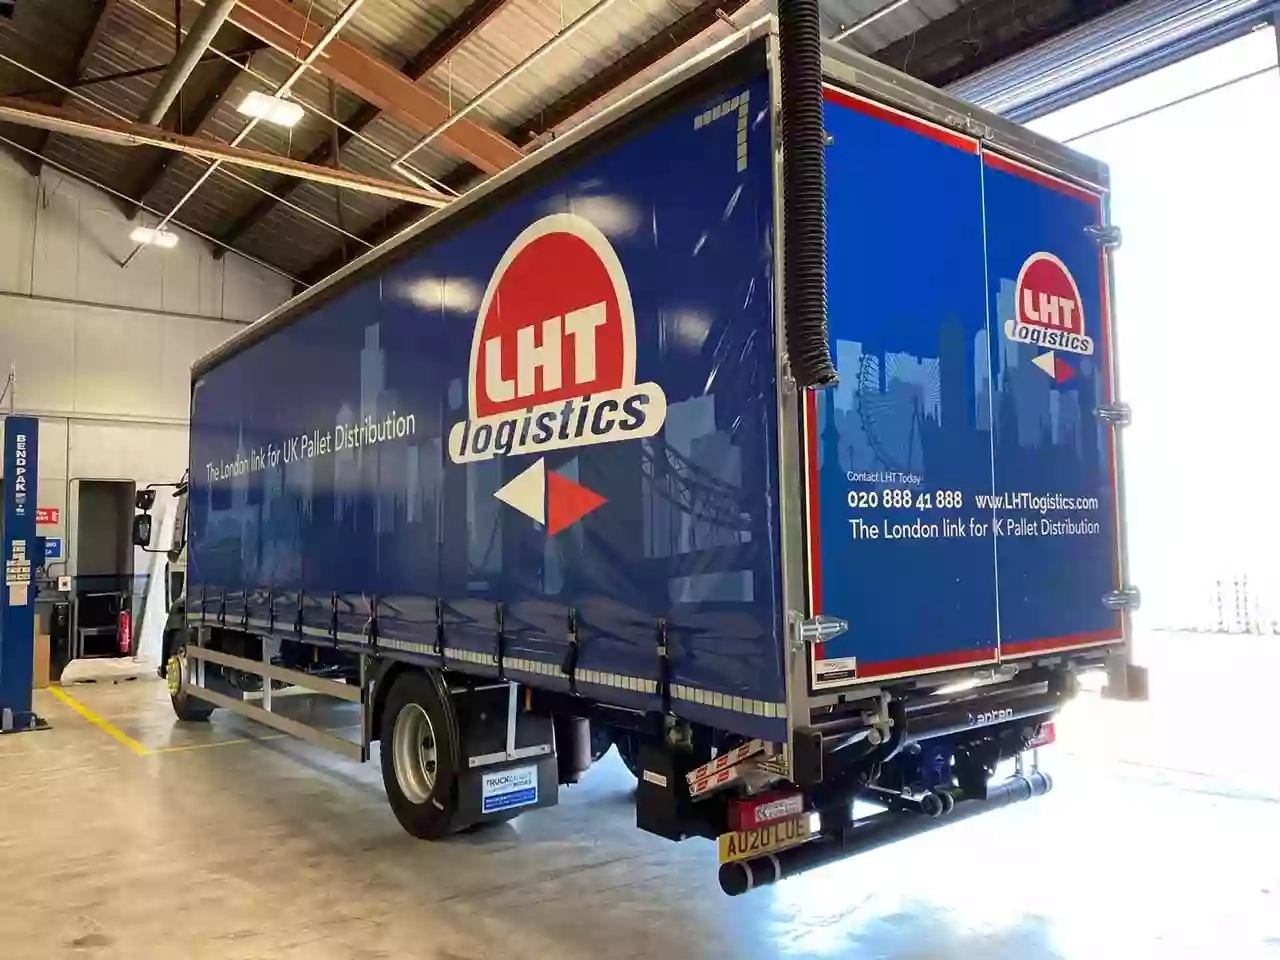 LHT Logistics Ltd